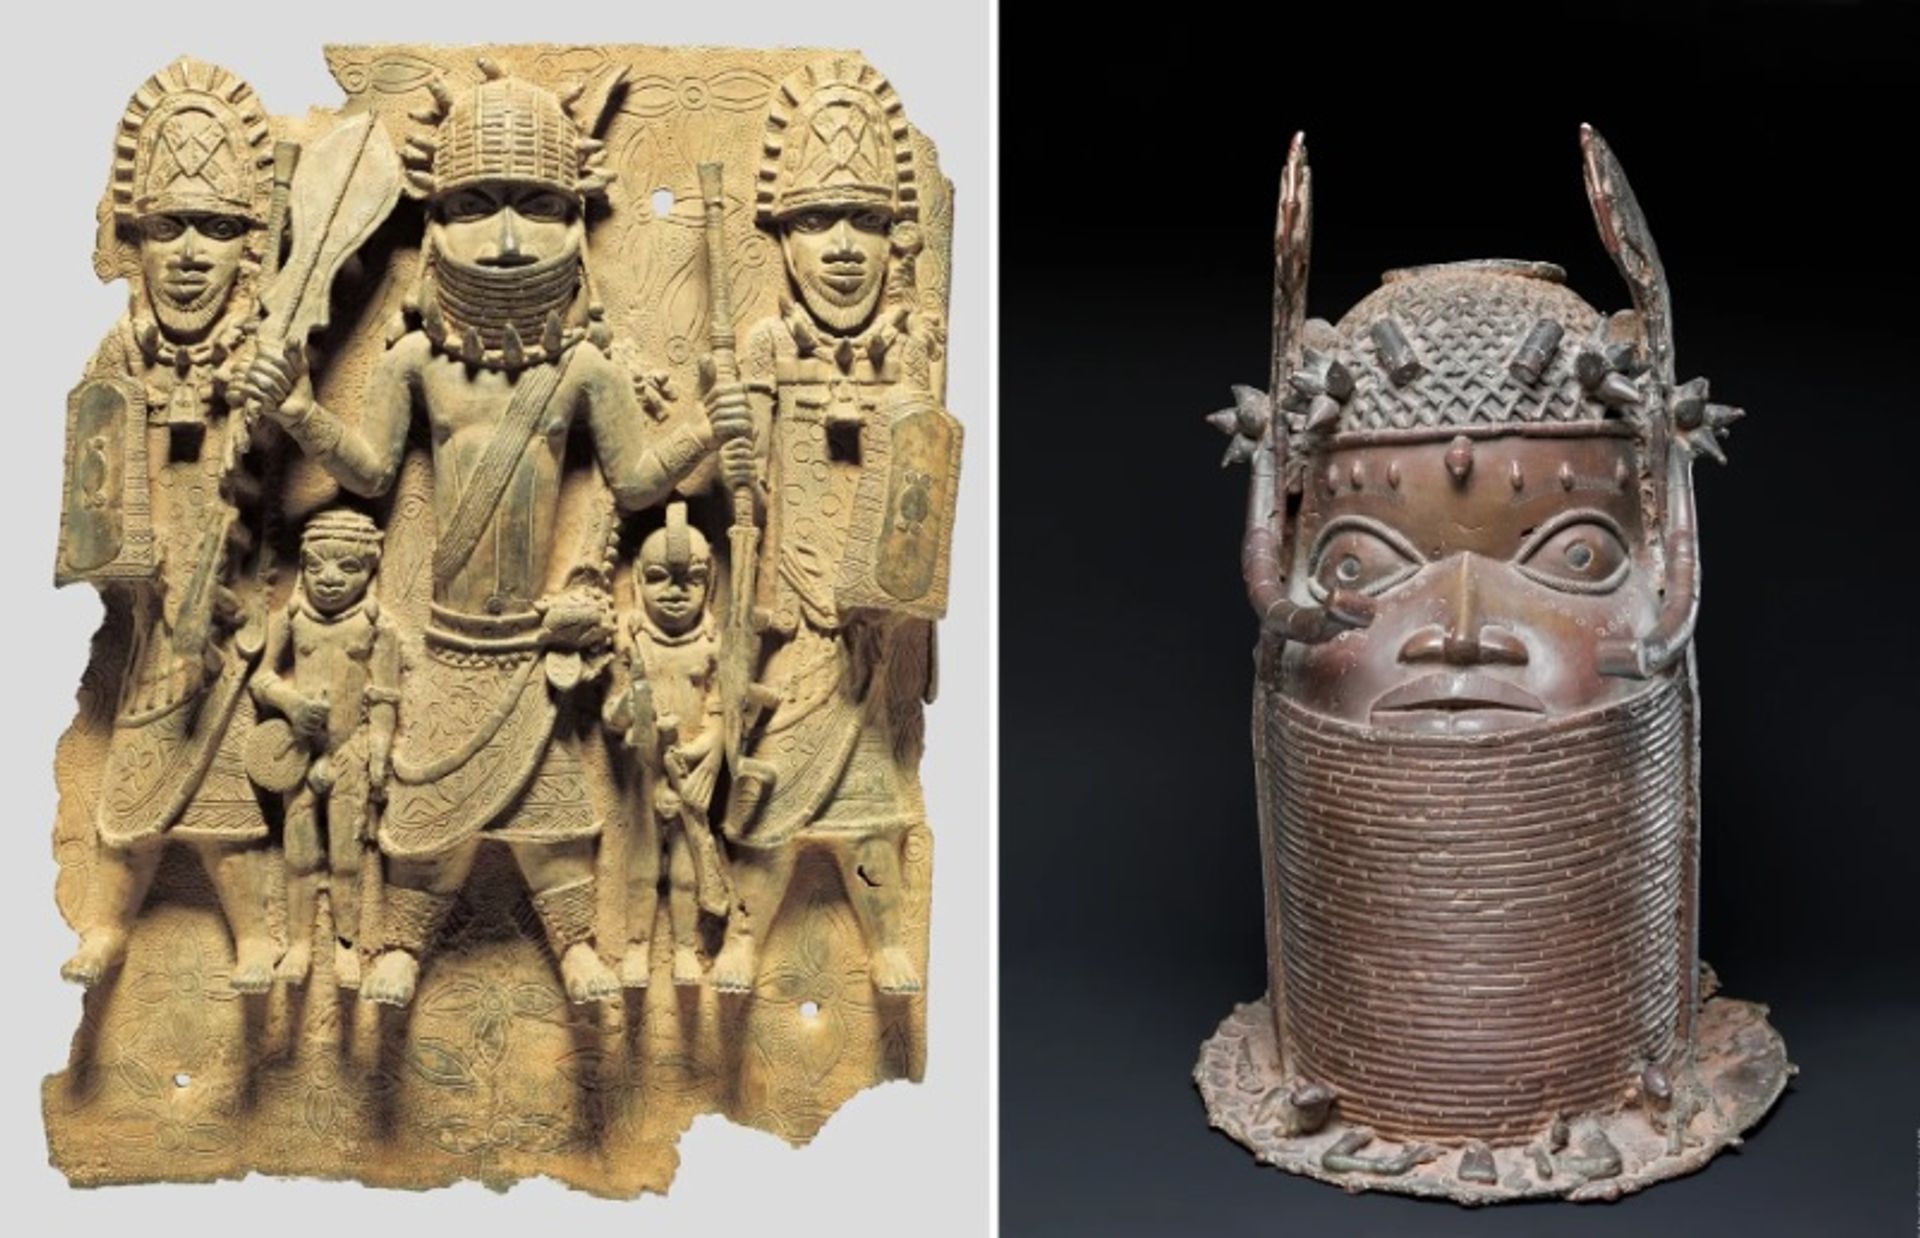 שתי עבודות ברונזה מבנין שהוחזרו לניגריה מגרמניה

צילום: © Staatliche Museen zu Berlin, Ethnologisches Museum / Claudia Obrocki (משמאל); מרטין פרנקן (מימין)